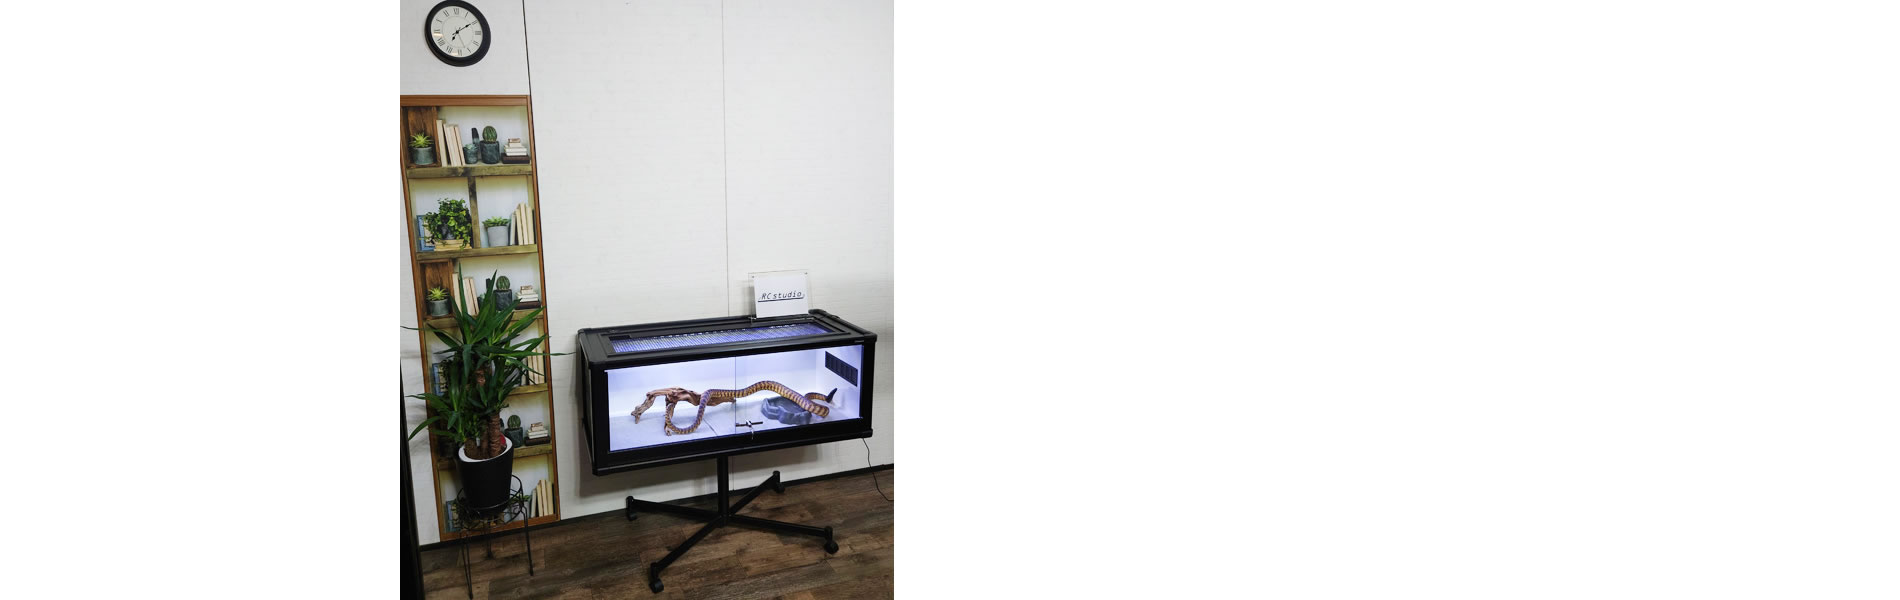 アールシースタジオ | RC studio 製の爬虫類ケージは、軽量で耐久性に